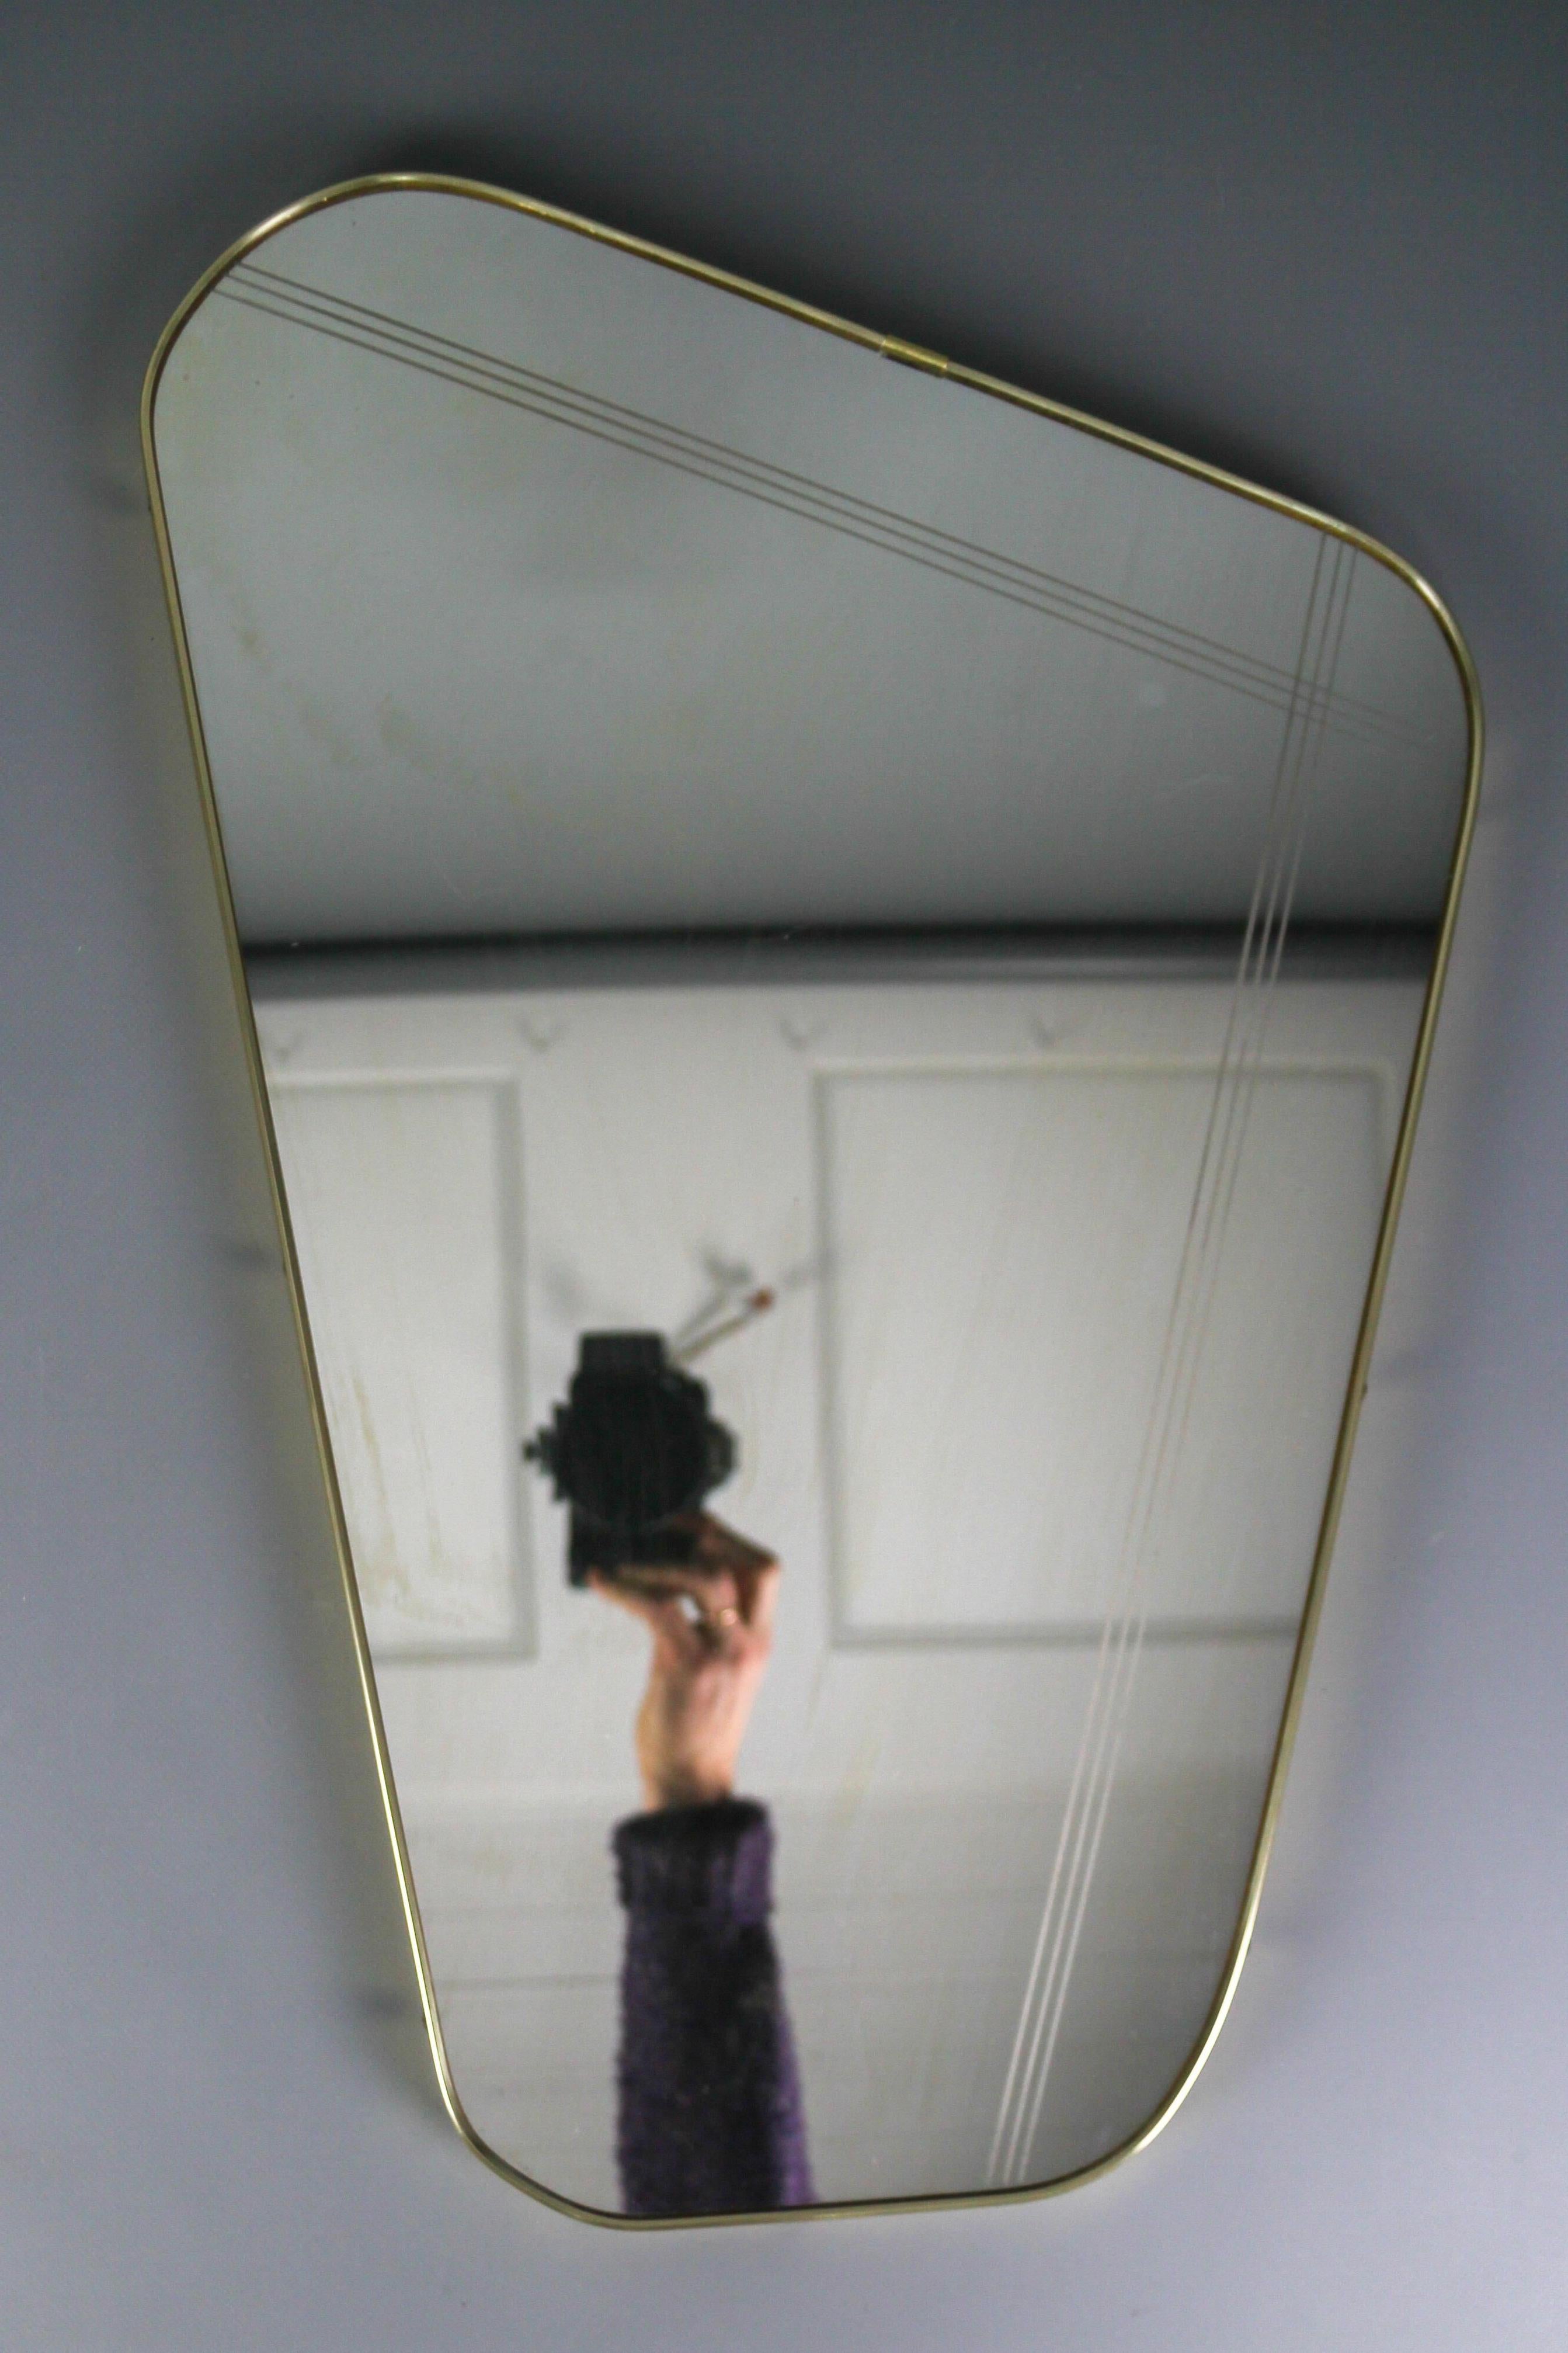 Vintage Mid-Century Modern miroir mural asymétrique en forme de rein avec un beau cadre en plastique de couleur dorée et des boutons en laiton, plaque arrière en placage. Allemagne, vers les années 1960.
Dimensions : hauteur : 57 cm / 22.44 in ;